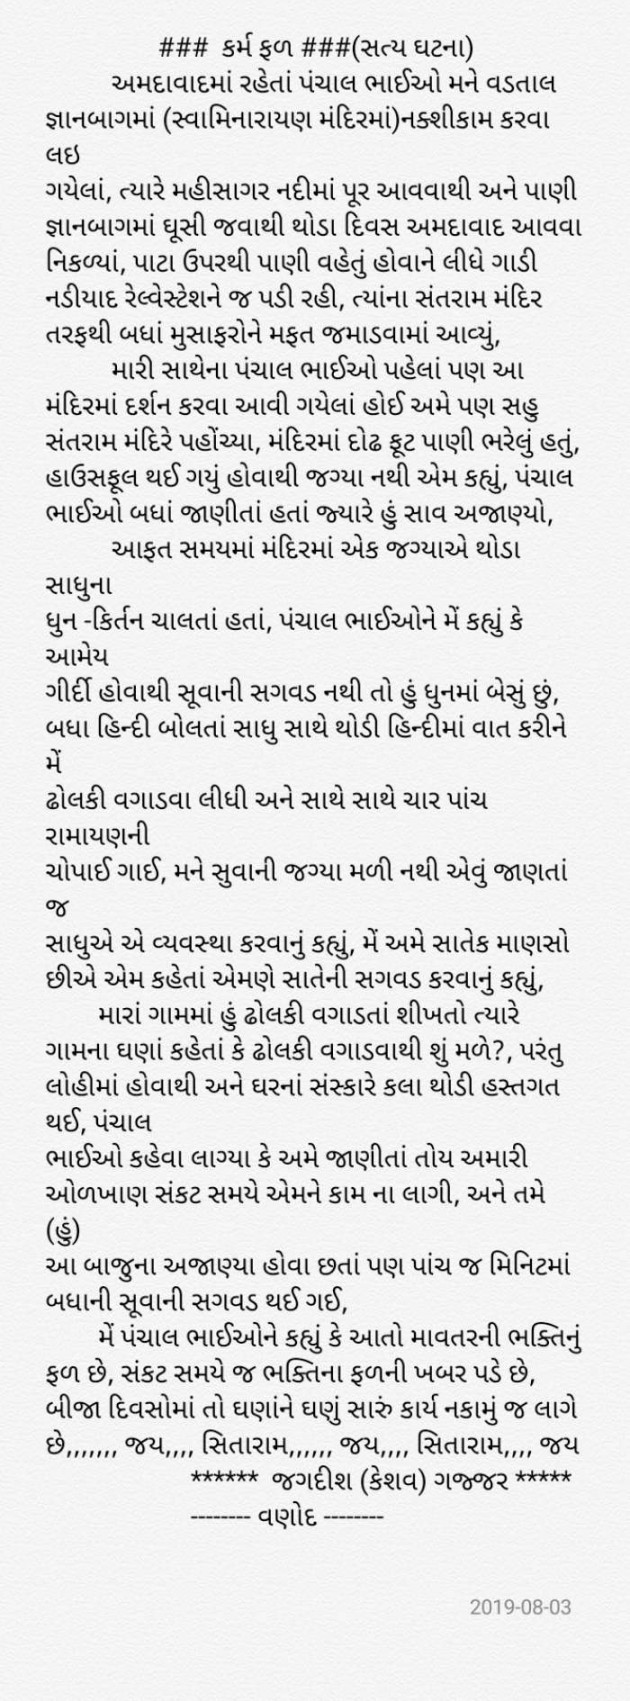 Gujarati Religious by Jagadish K Gajjar Keshavlal BHAGAT : 111500855